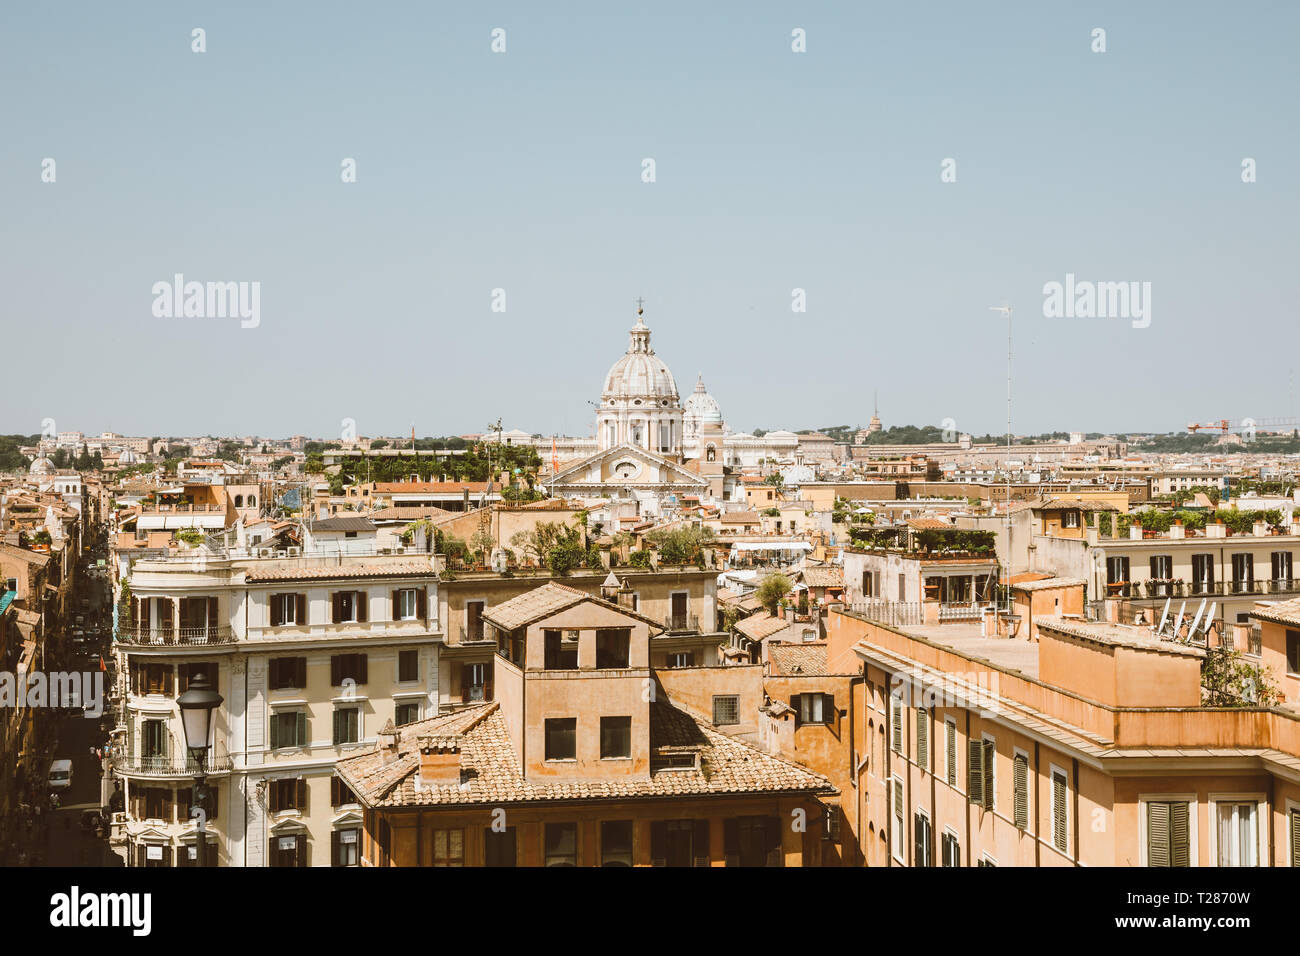 Panoramablick auf die Stadt Rom mit alten Häusern, von der Spanischen Treppe entfernt. Sommer Sonne und blauer Himmel Stockfoto